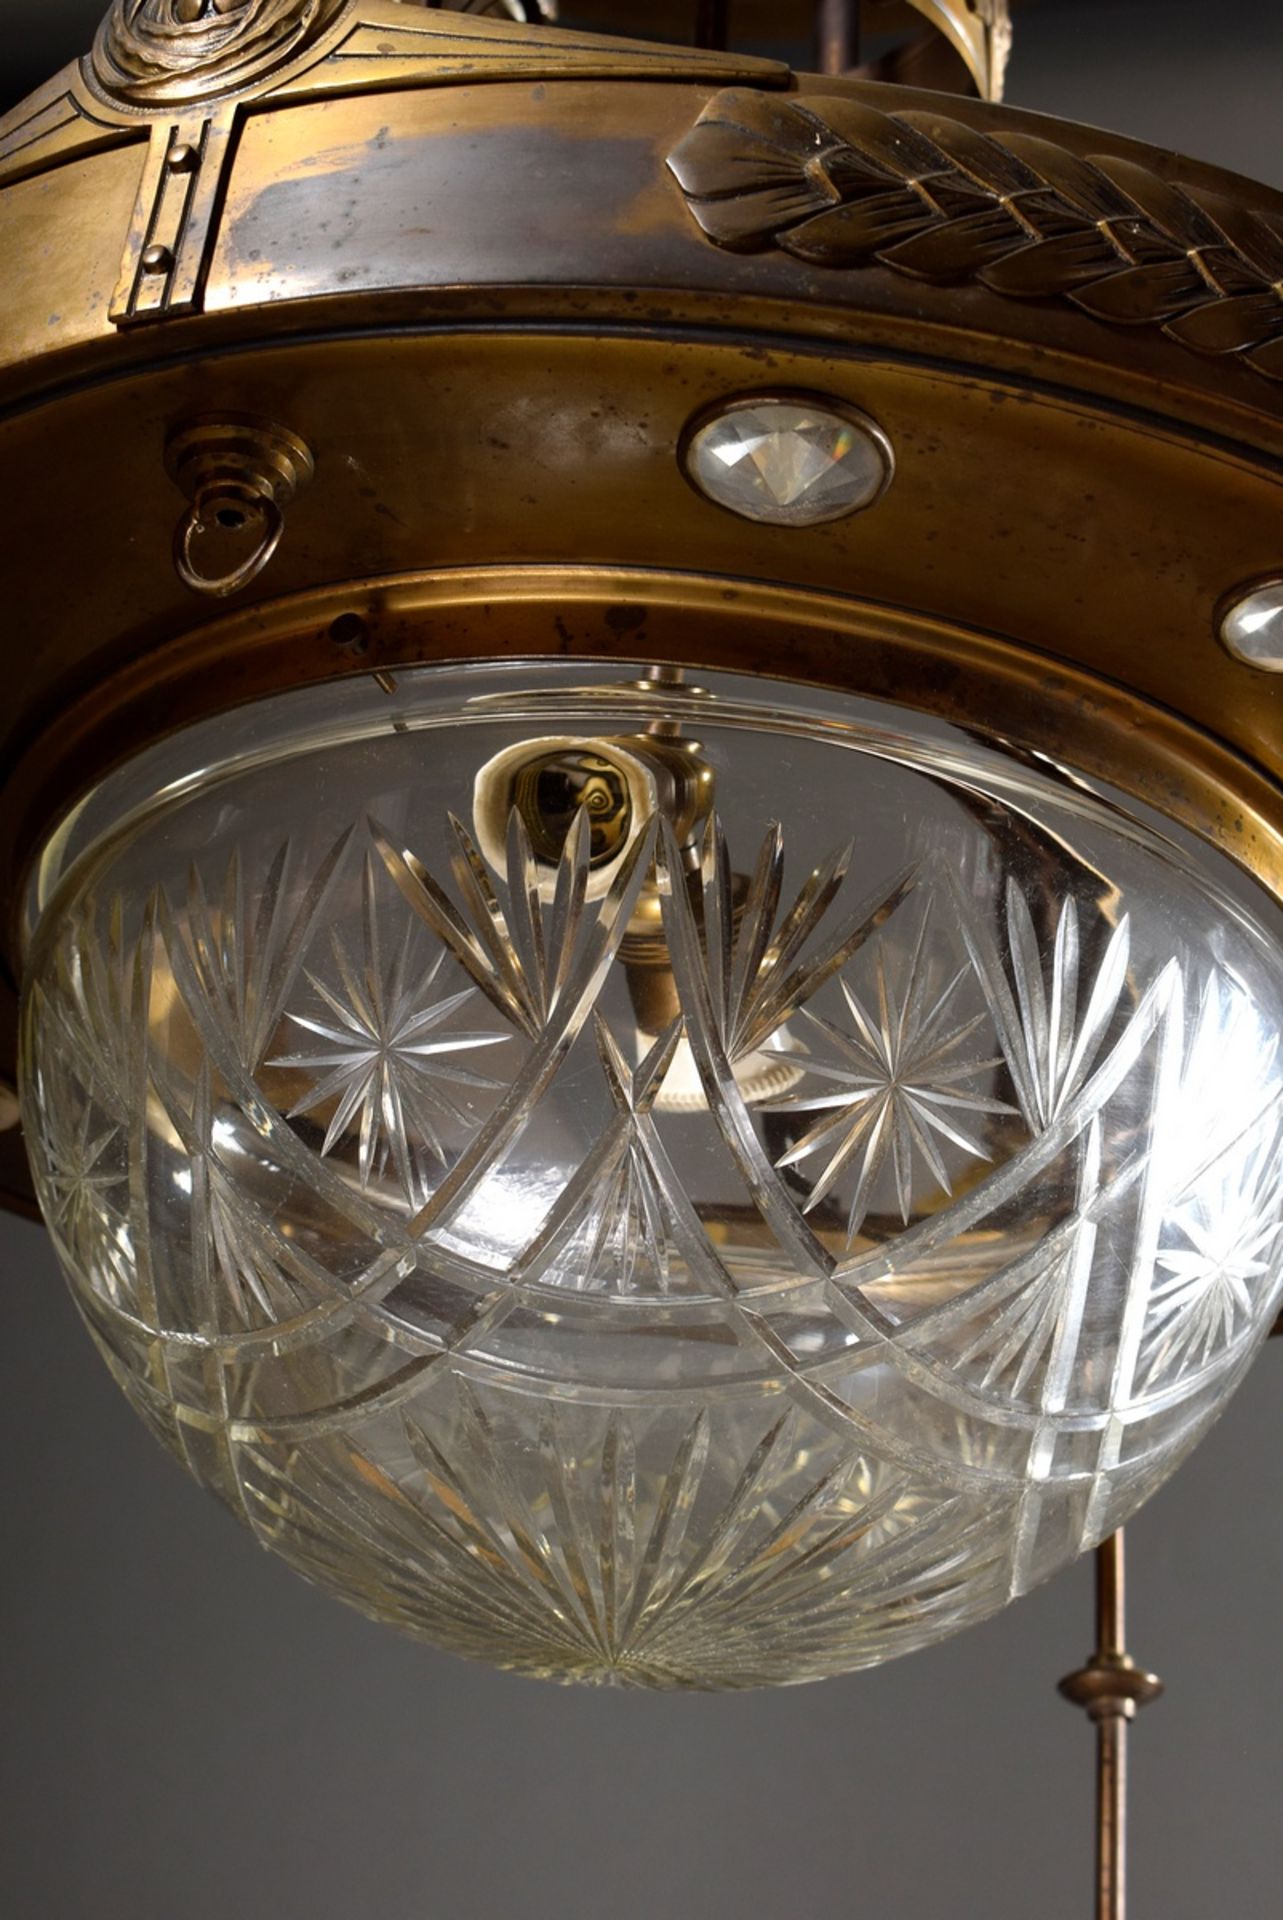 Jugendstil Deckenlampe mit geschliffener Glaskuppel und hängenden Lichtquellen in gepunztem Messing - Bild 2 aus 7